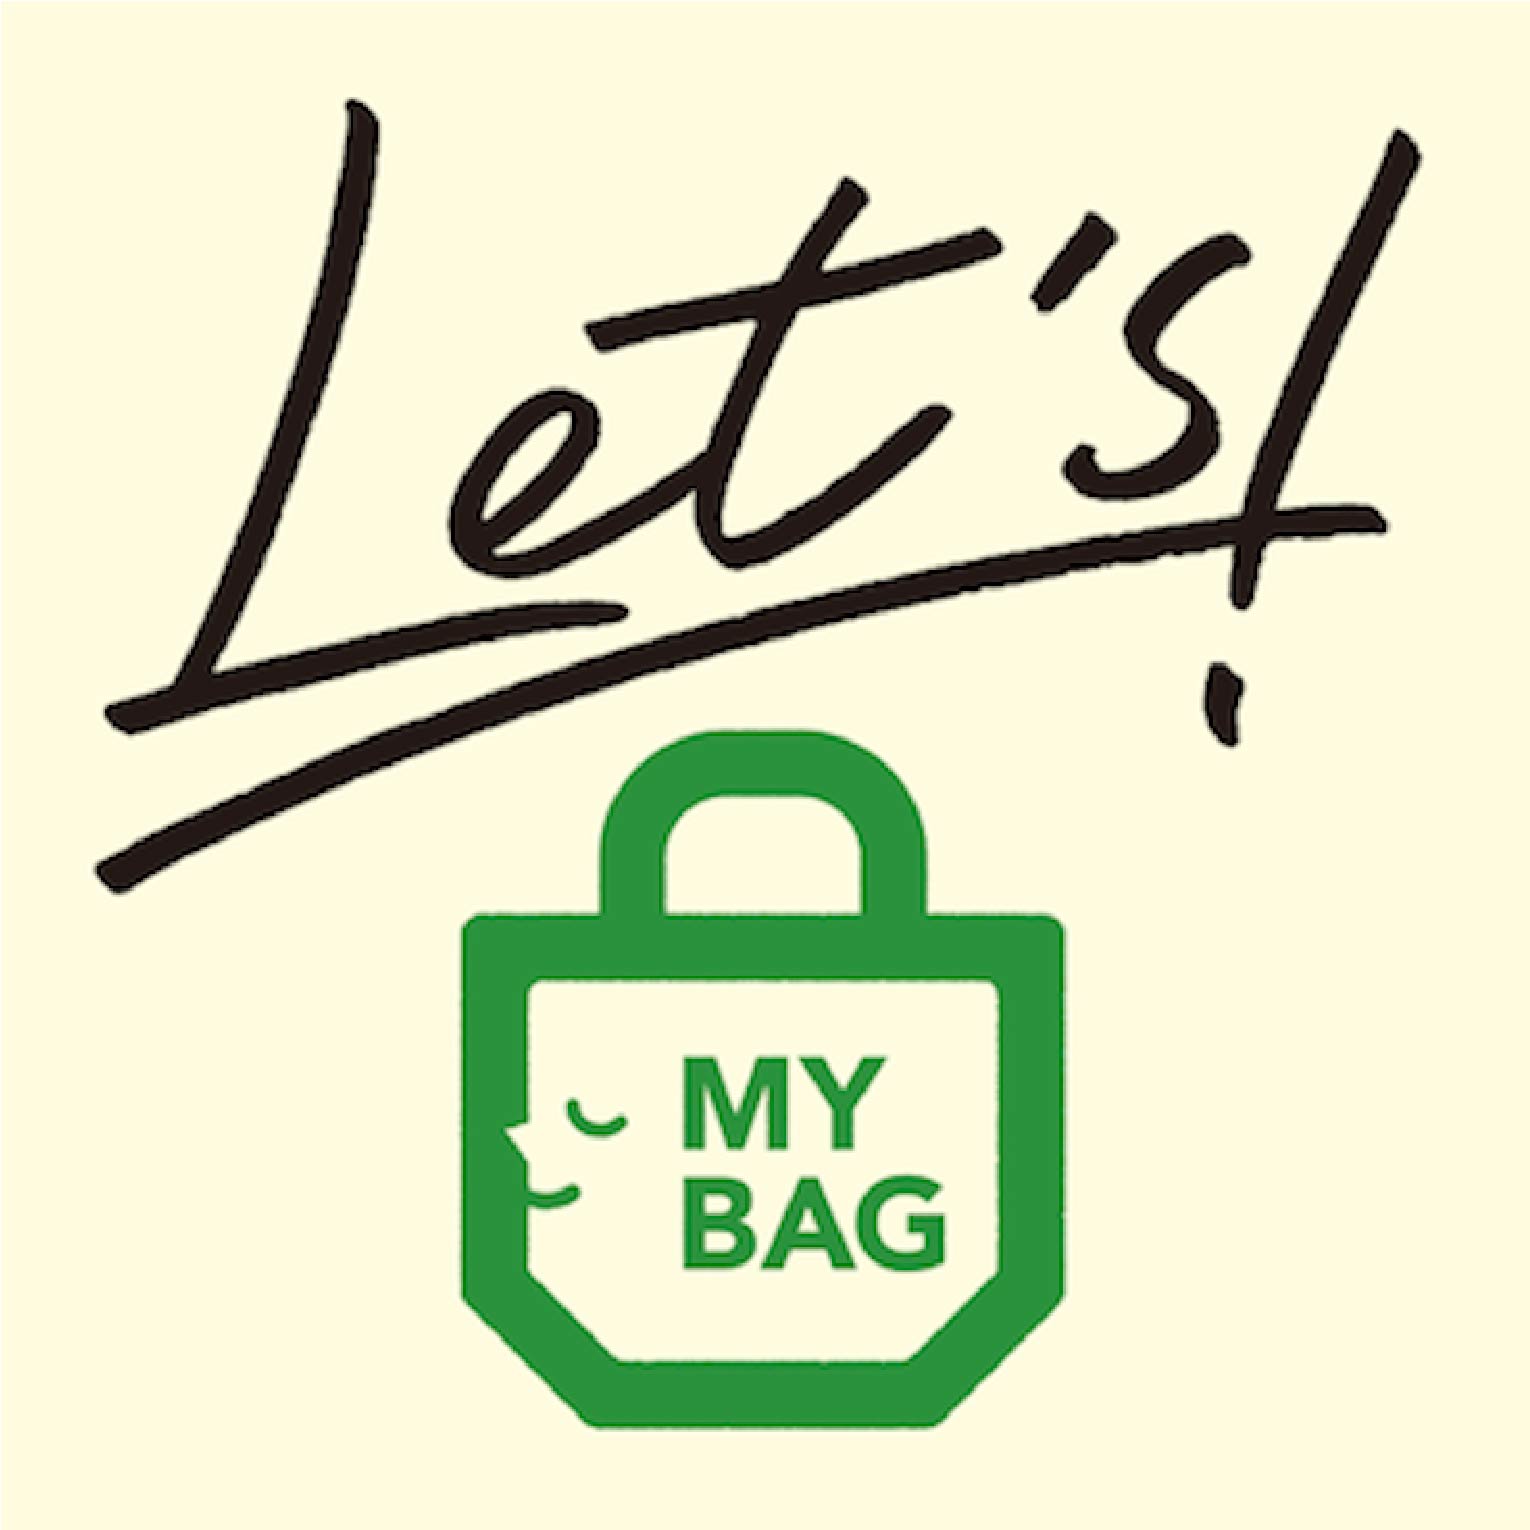 Let’s MY BAG<br>お買い物には、ぜひマイバッグを